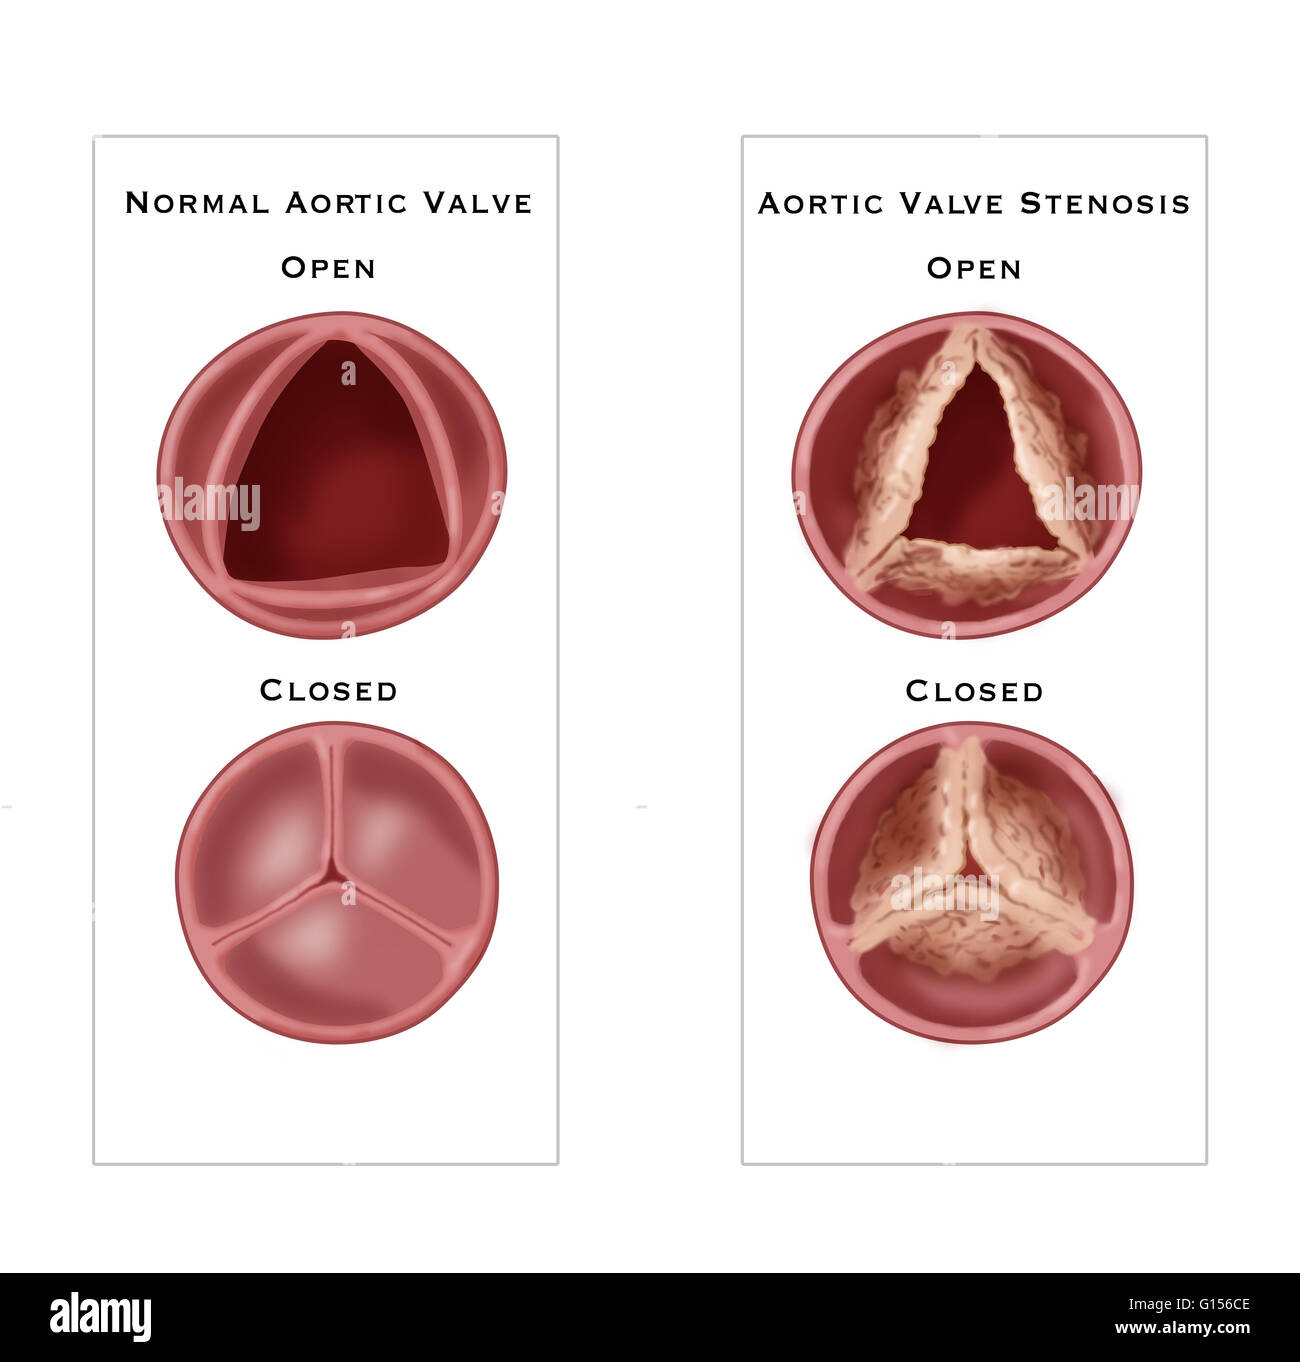 Immagine che mostra il confronto di una normale valvola aortica (sinistra) alla valvola aortica stenosi (a destra), un tipo di malattia cardiaca valvolare caratterizzato da un restringimento anormale della valvola aortica apertura. Foto Stock